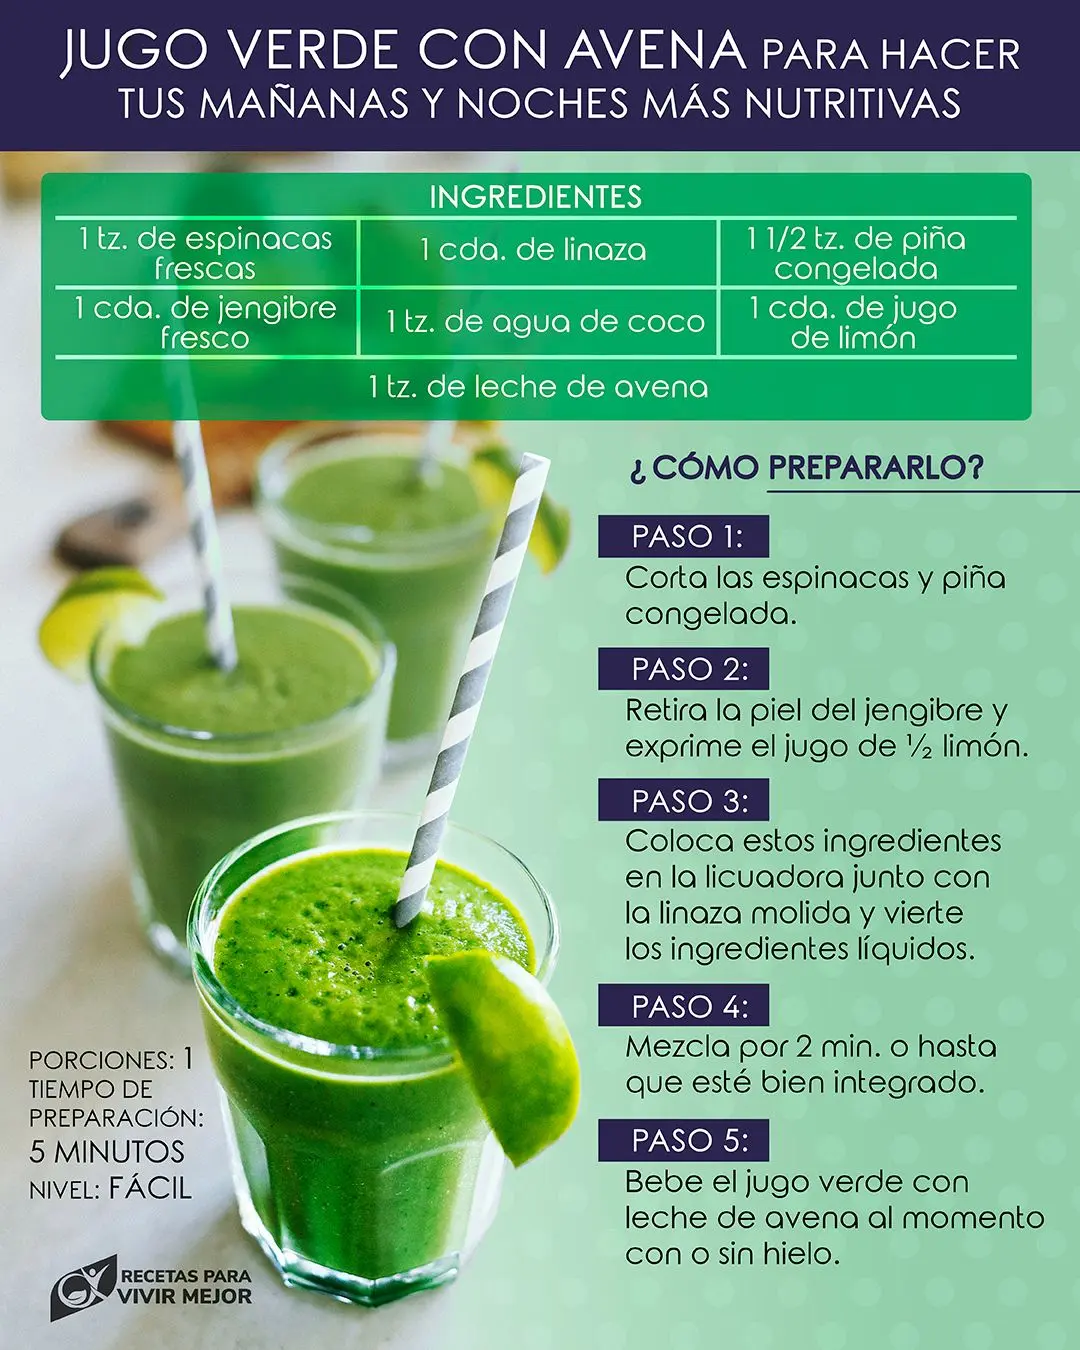 jugo verde ingredientes - Cómo se tiene que tomar el jugo verde